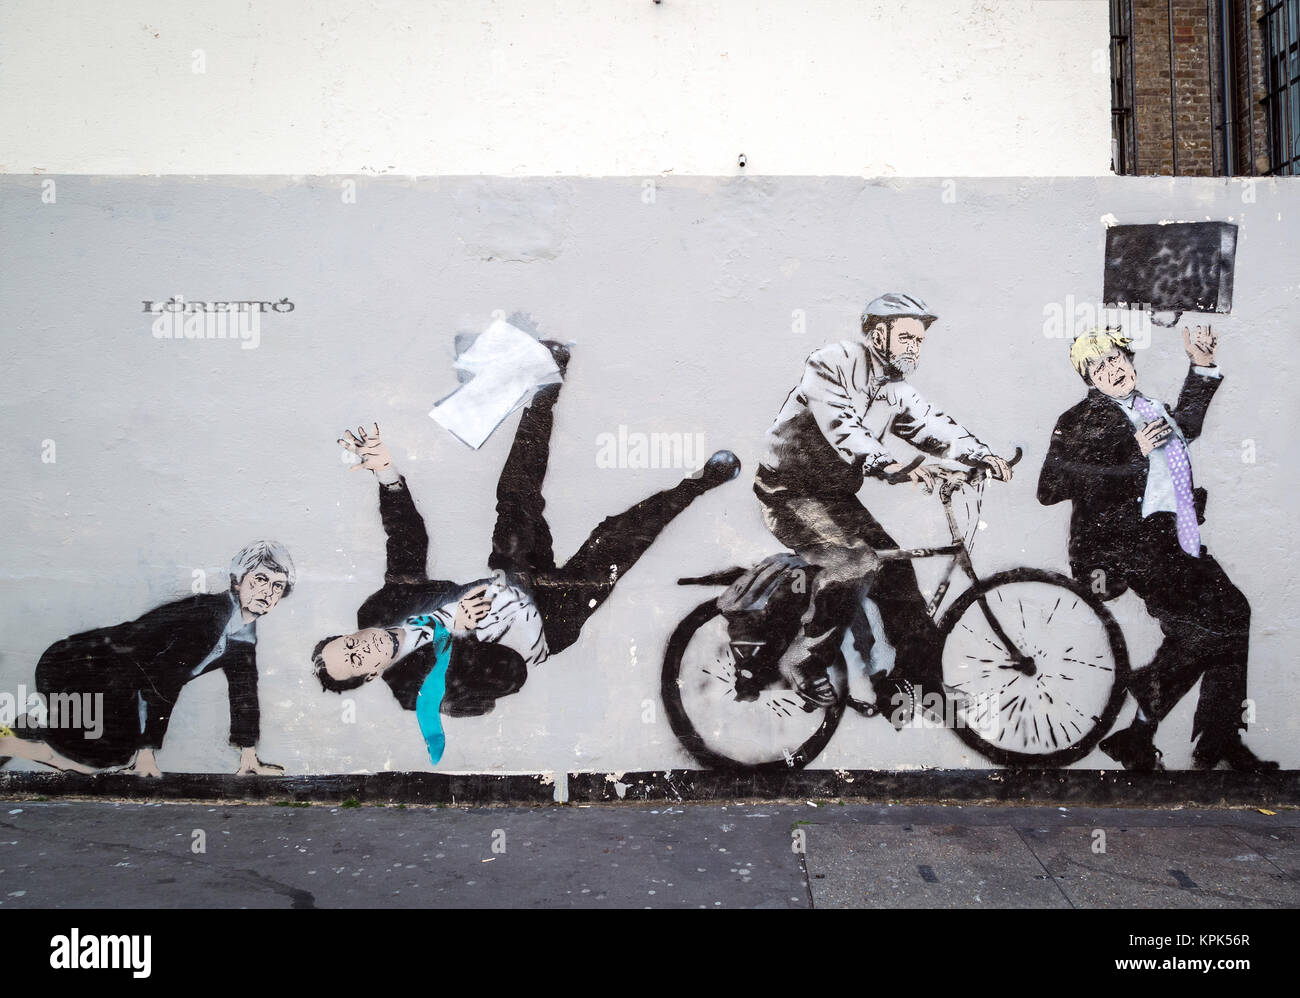 La satire politique britannique d'art urbain par Loretto - Londres un artiste de graffiti. Le sud-est de Londres, au Royaume-Uni. Banque D'Images